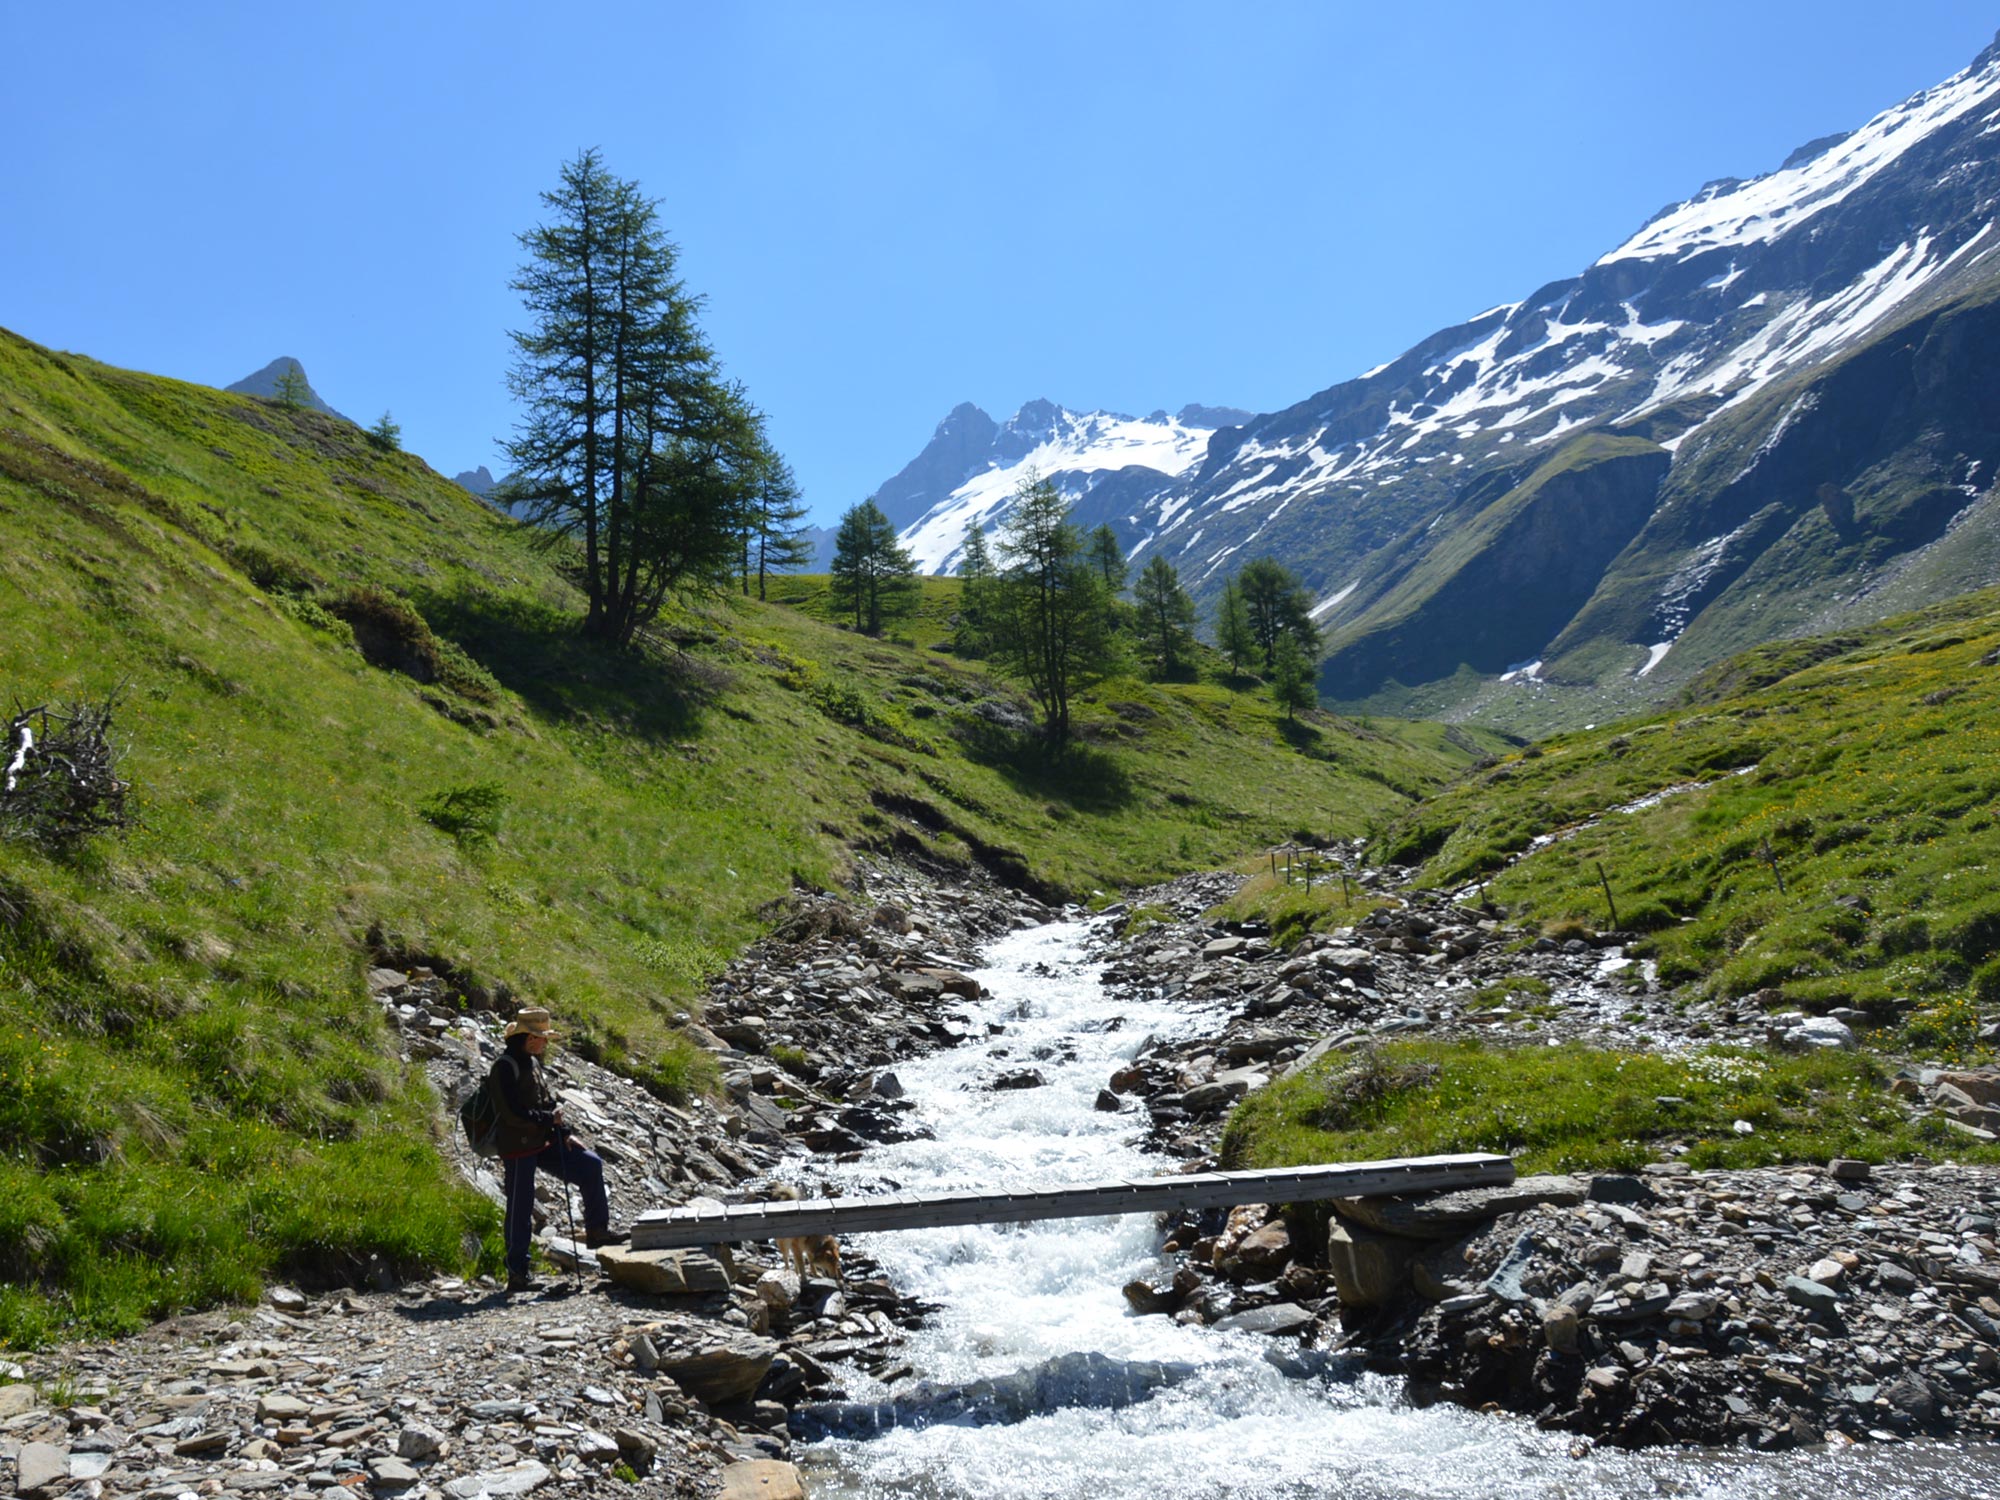 Vacanza escursionistica in Val di Vizze, Sudtirolo